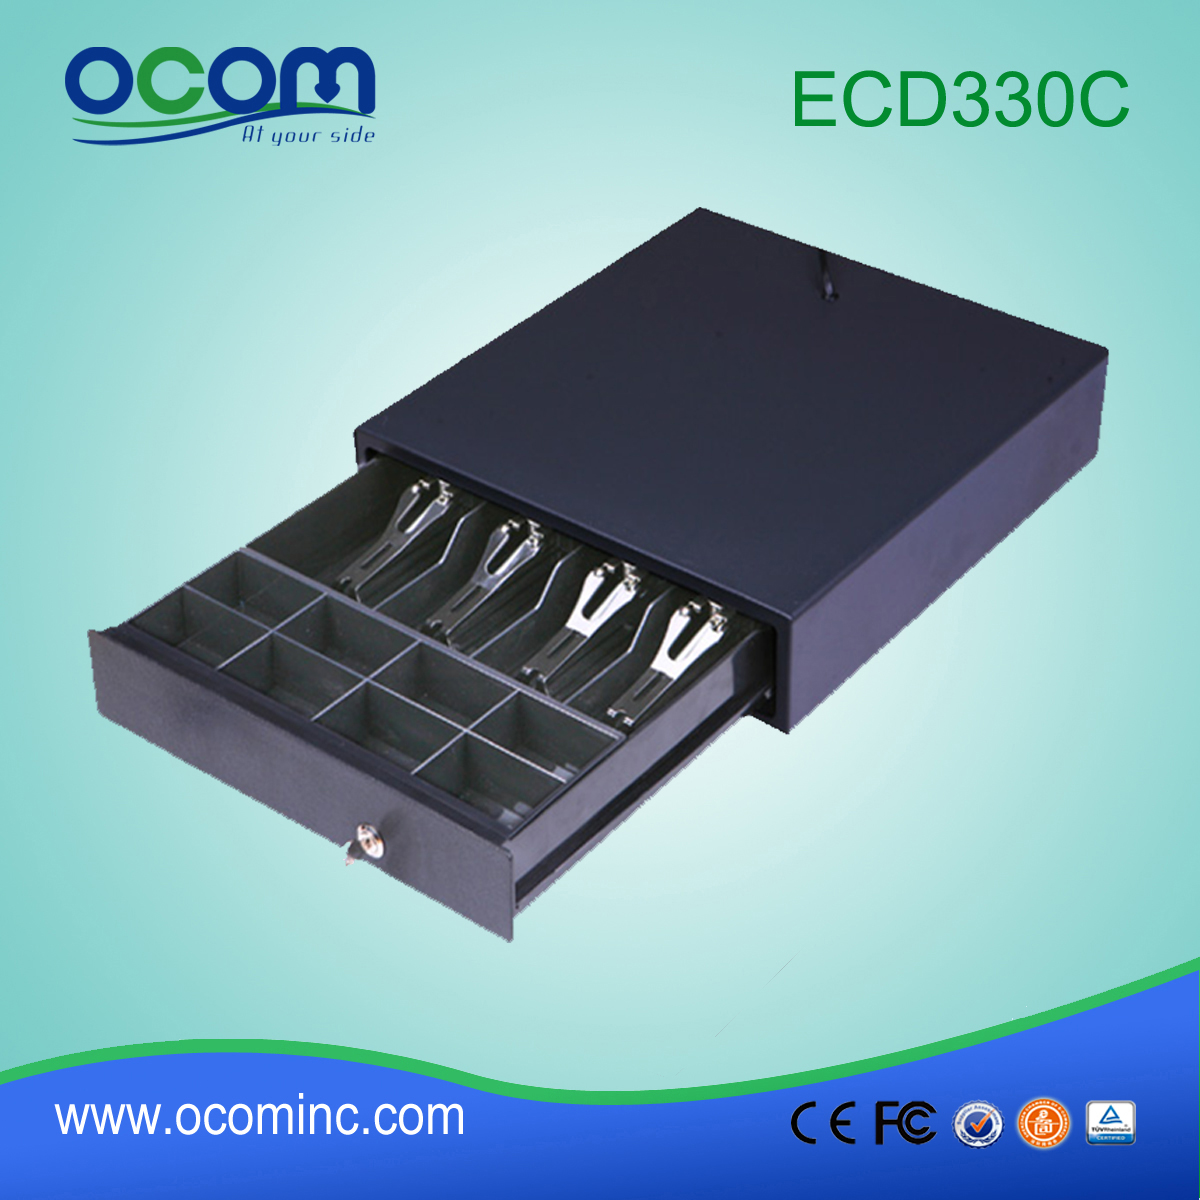 (ECD330C) Nouveau tiroir-caisse pos de couleur noire